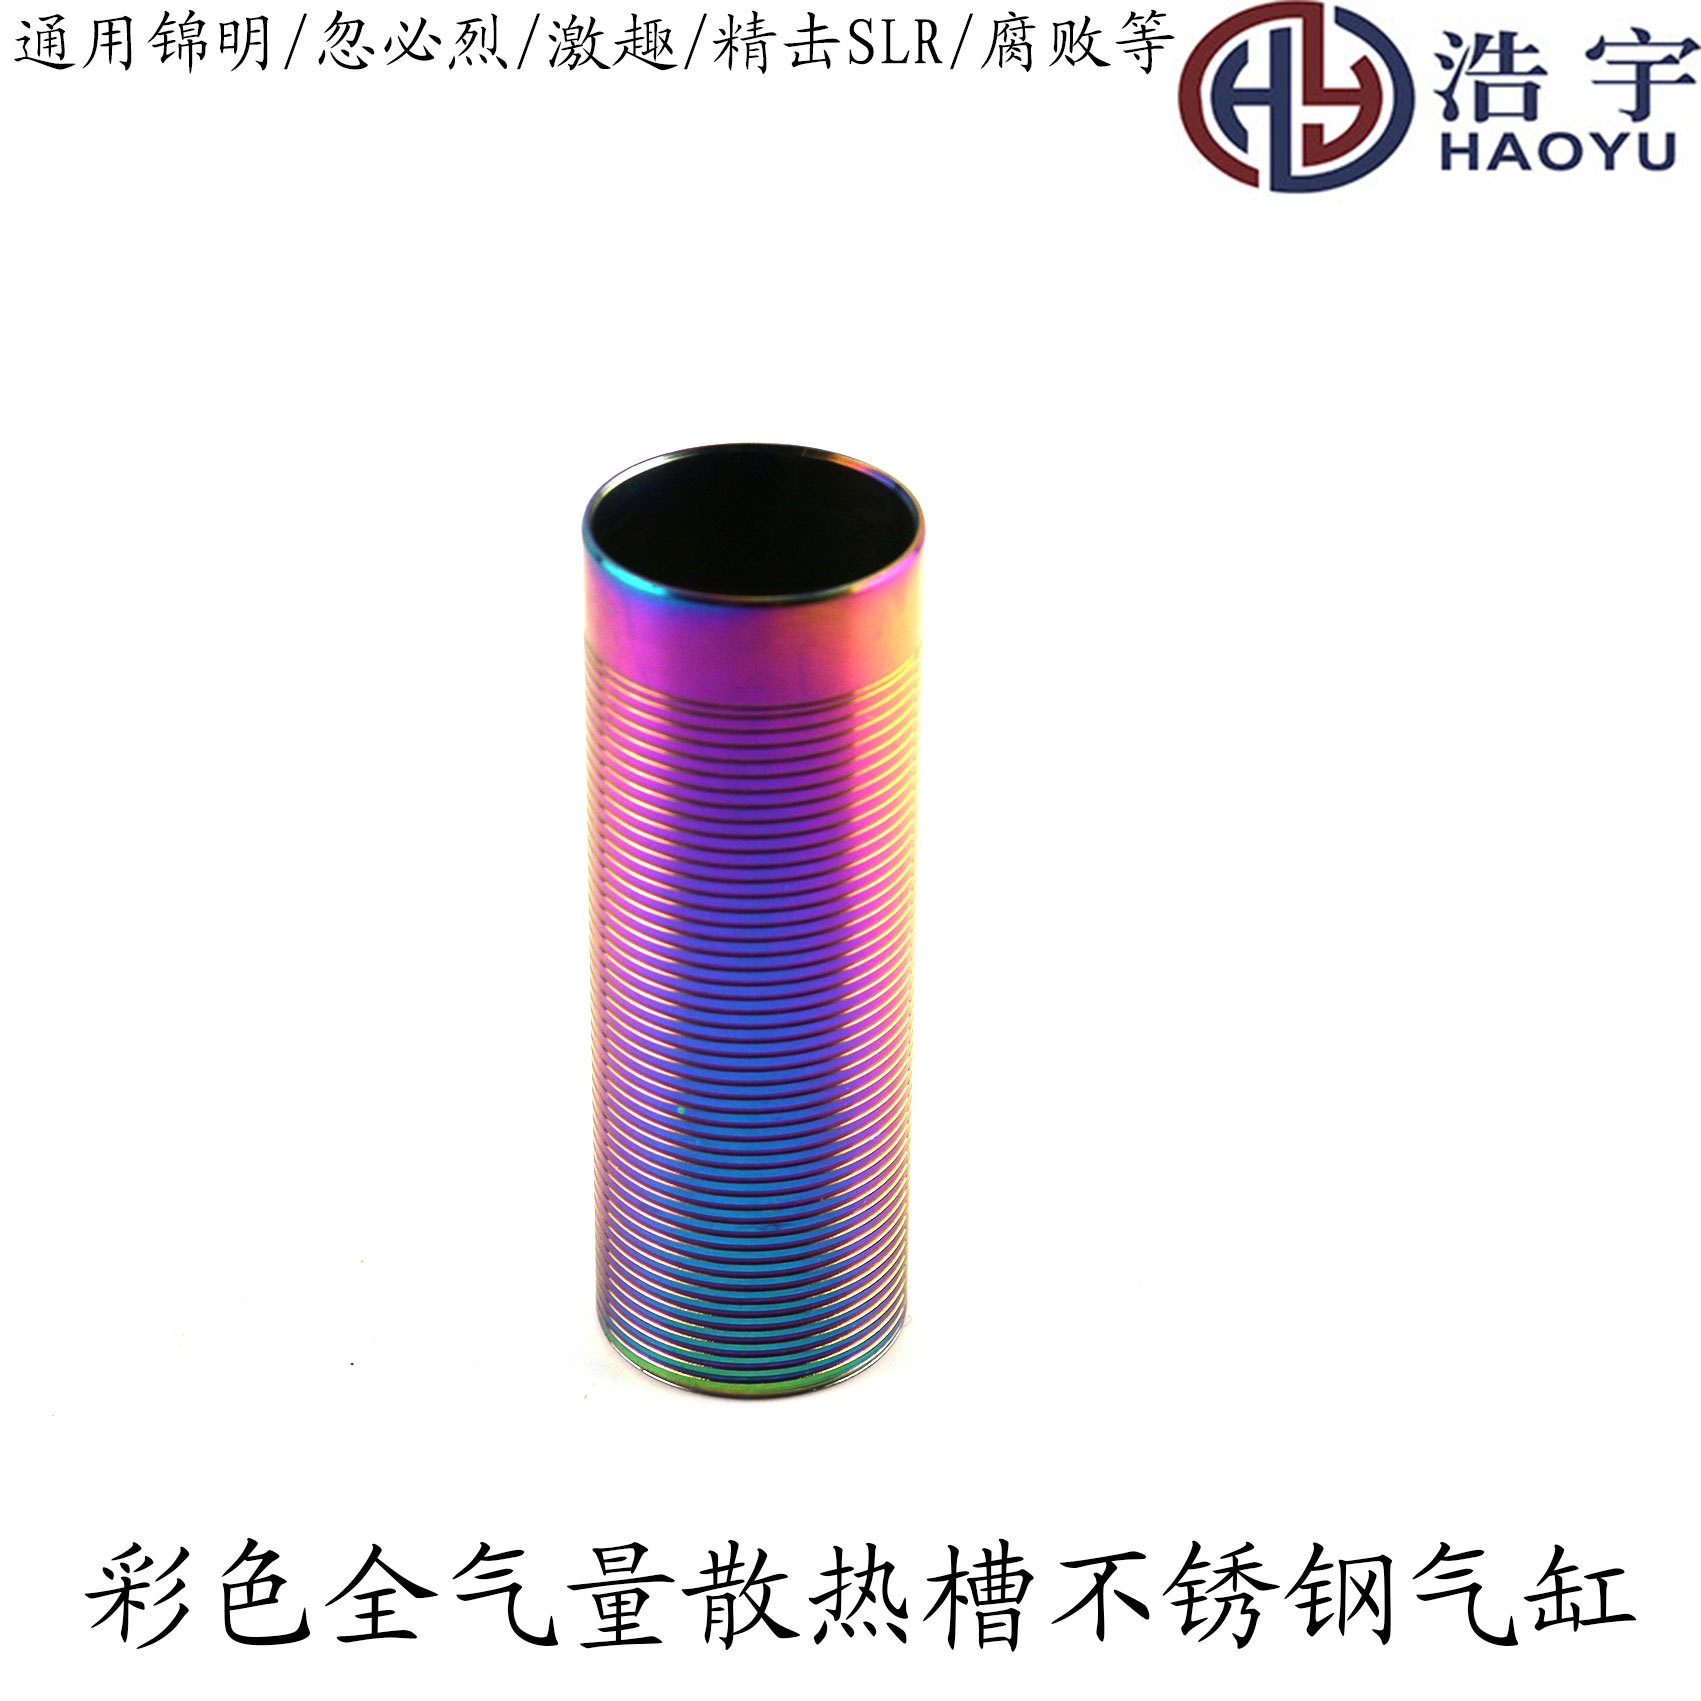 Spännande och precision strejk jinming 8.9.10 våglåda illusion rostfritt stål kylfläns full luft cylinder 50% 60% 75% 80